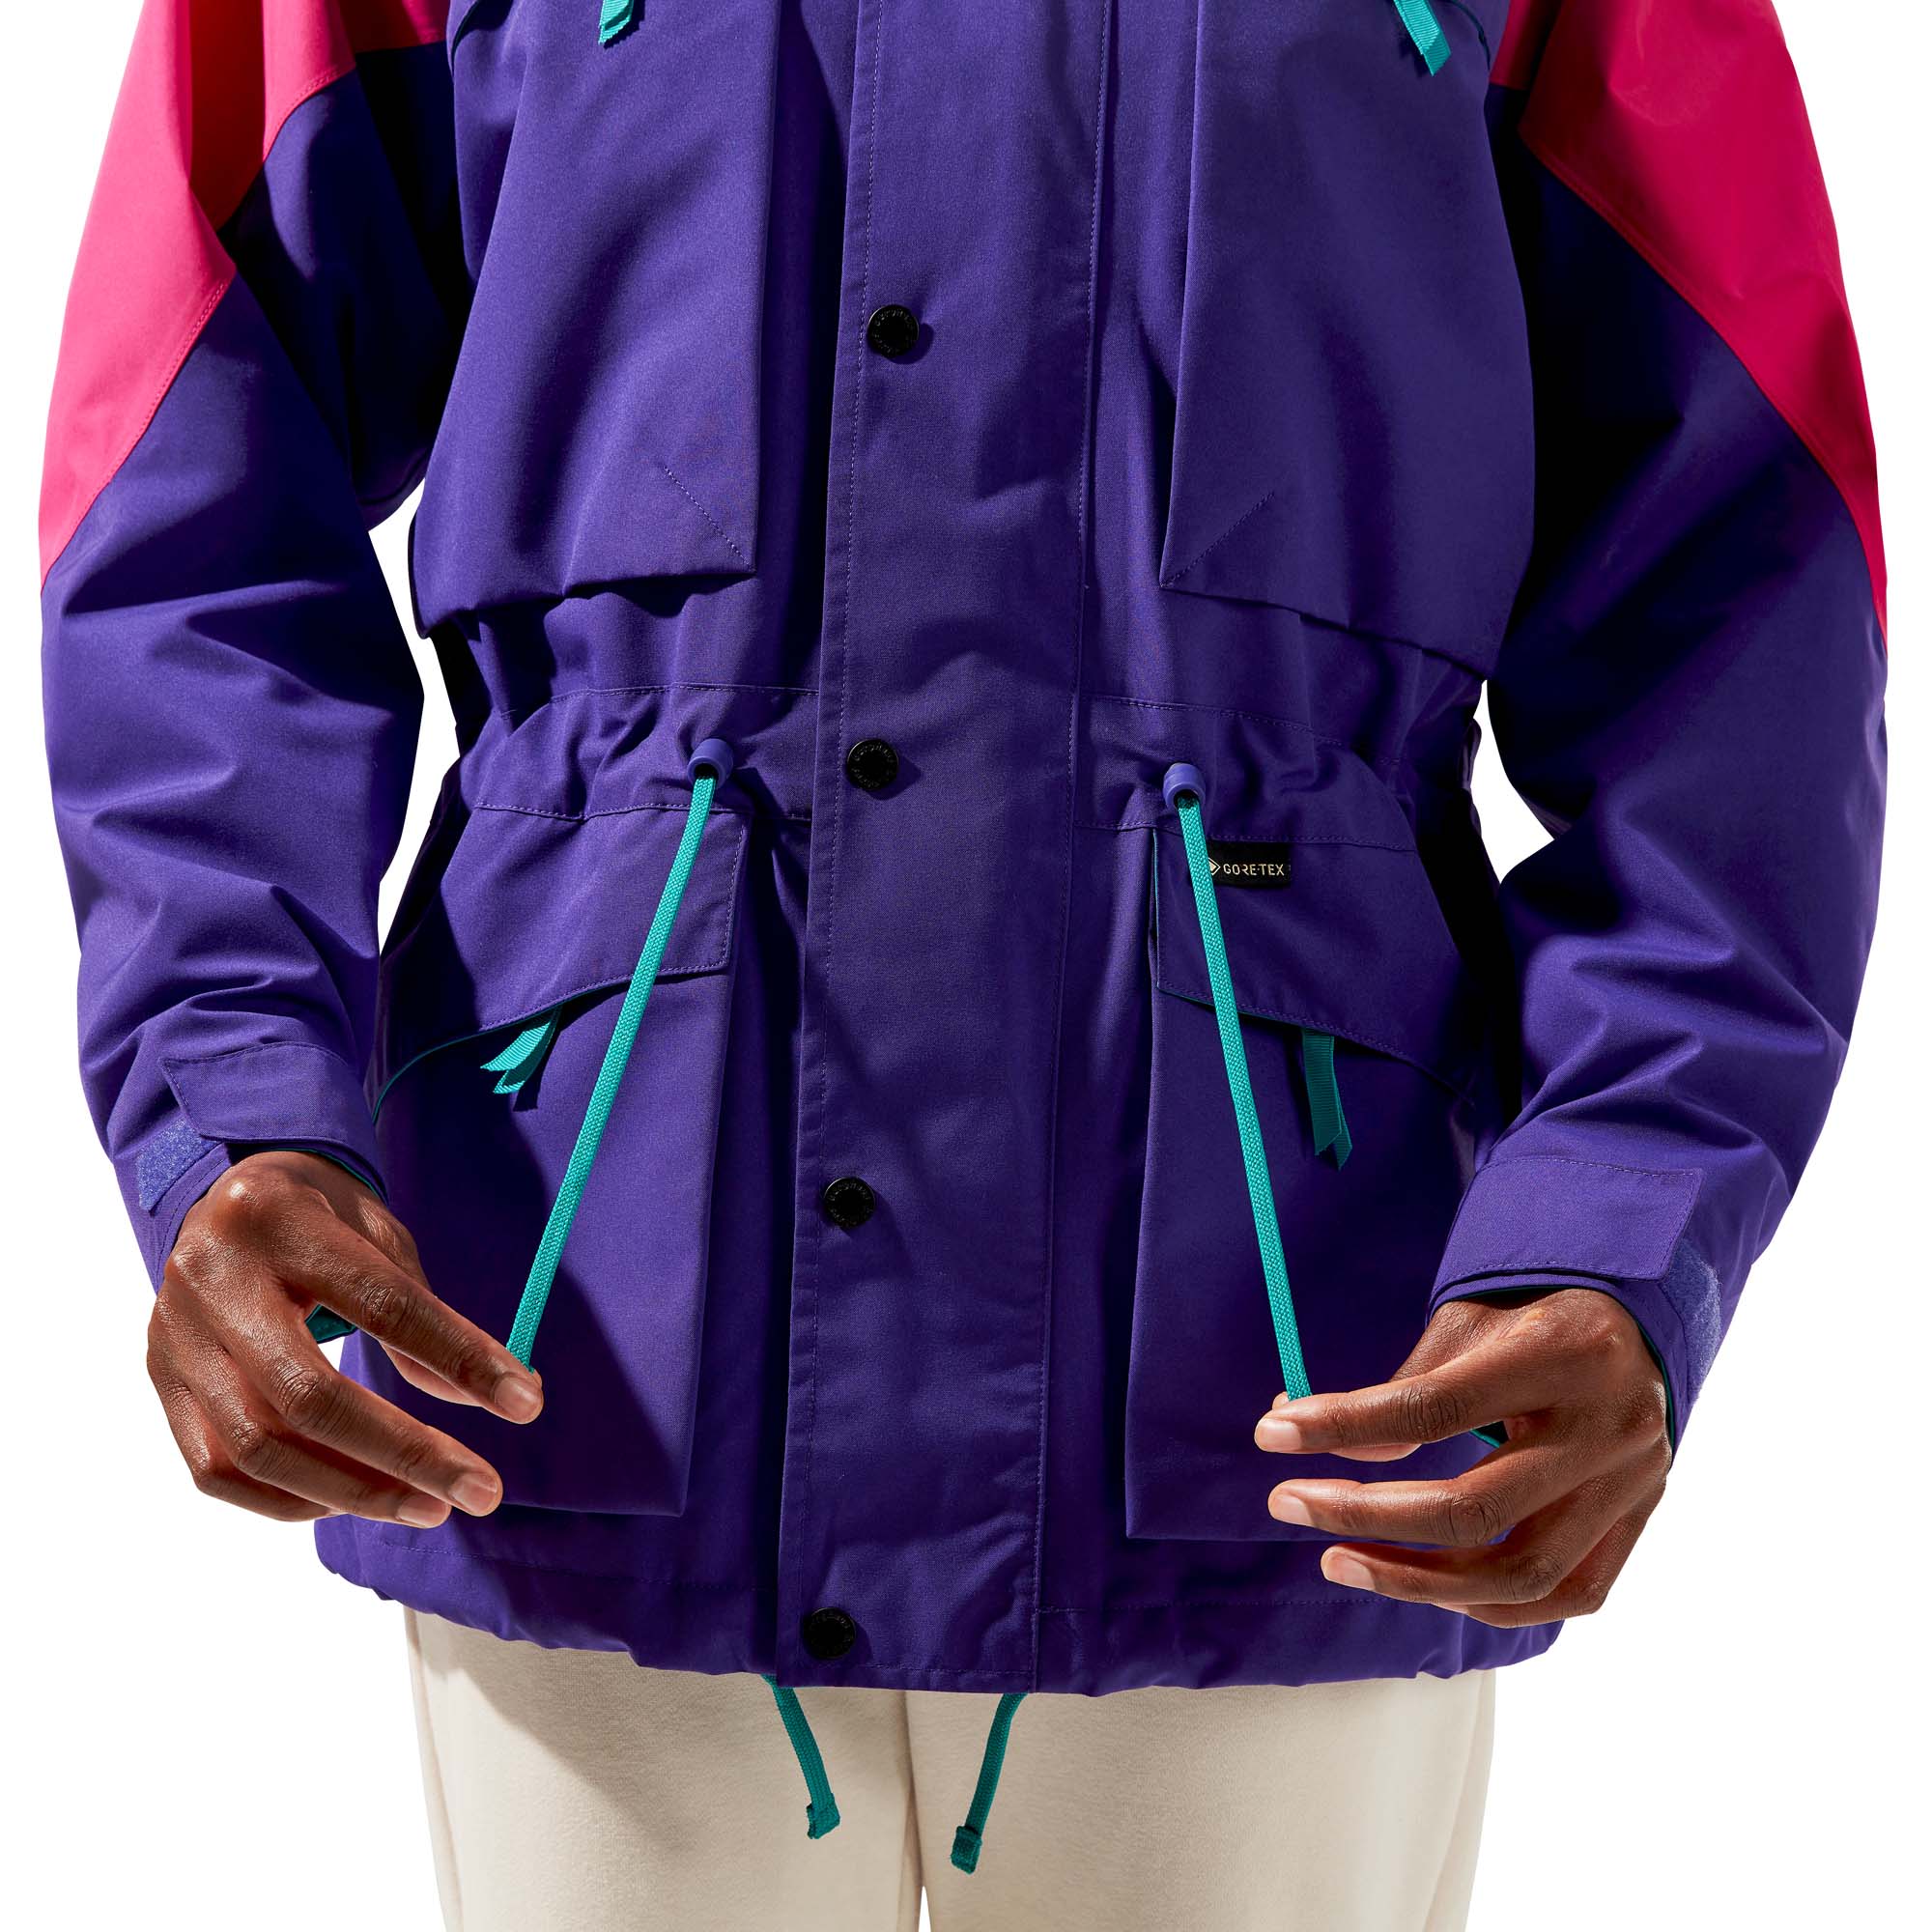 Berghaus Unisex Mera Peak 2000 Waterproof Jacket